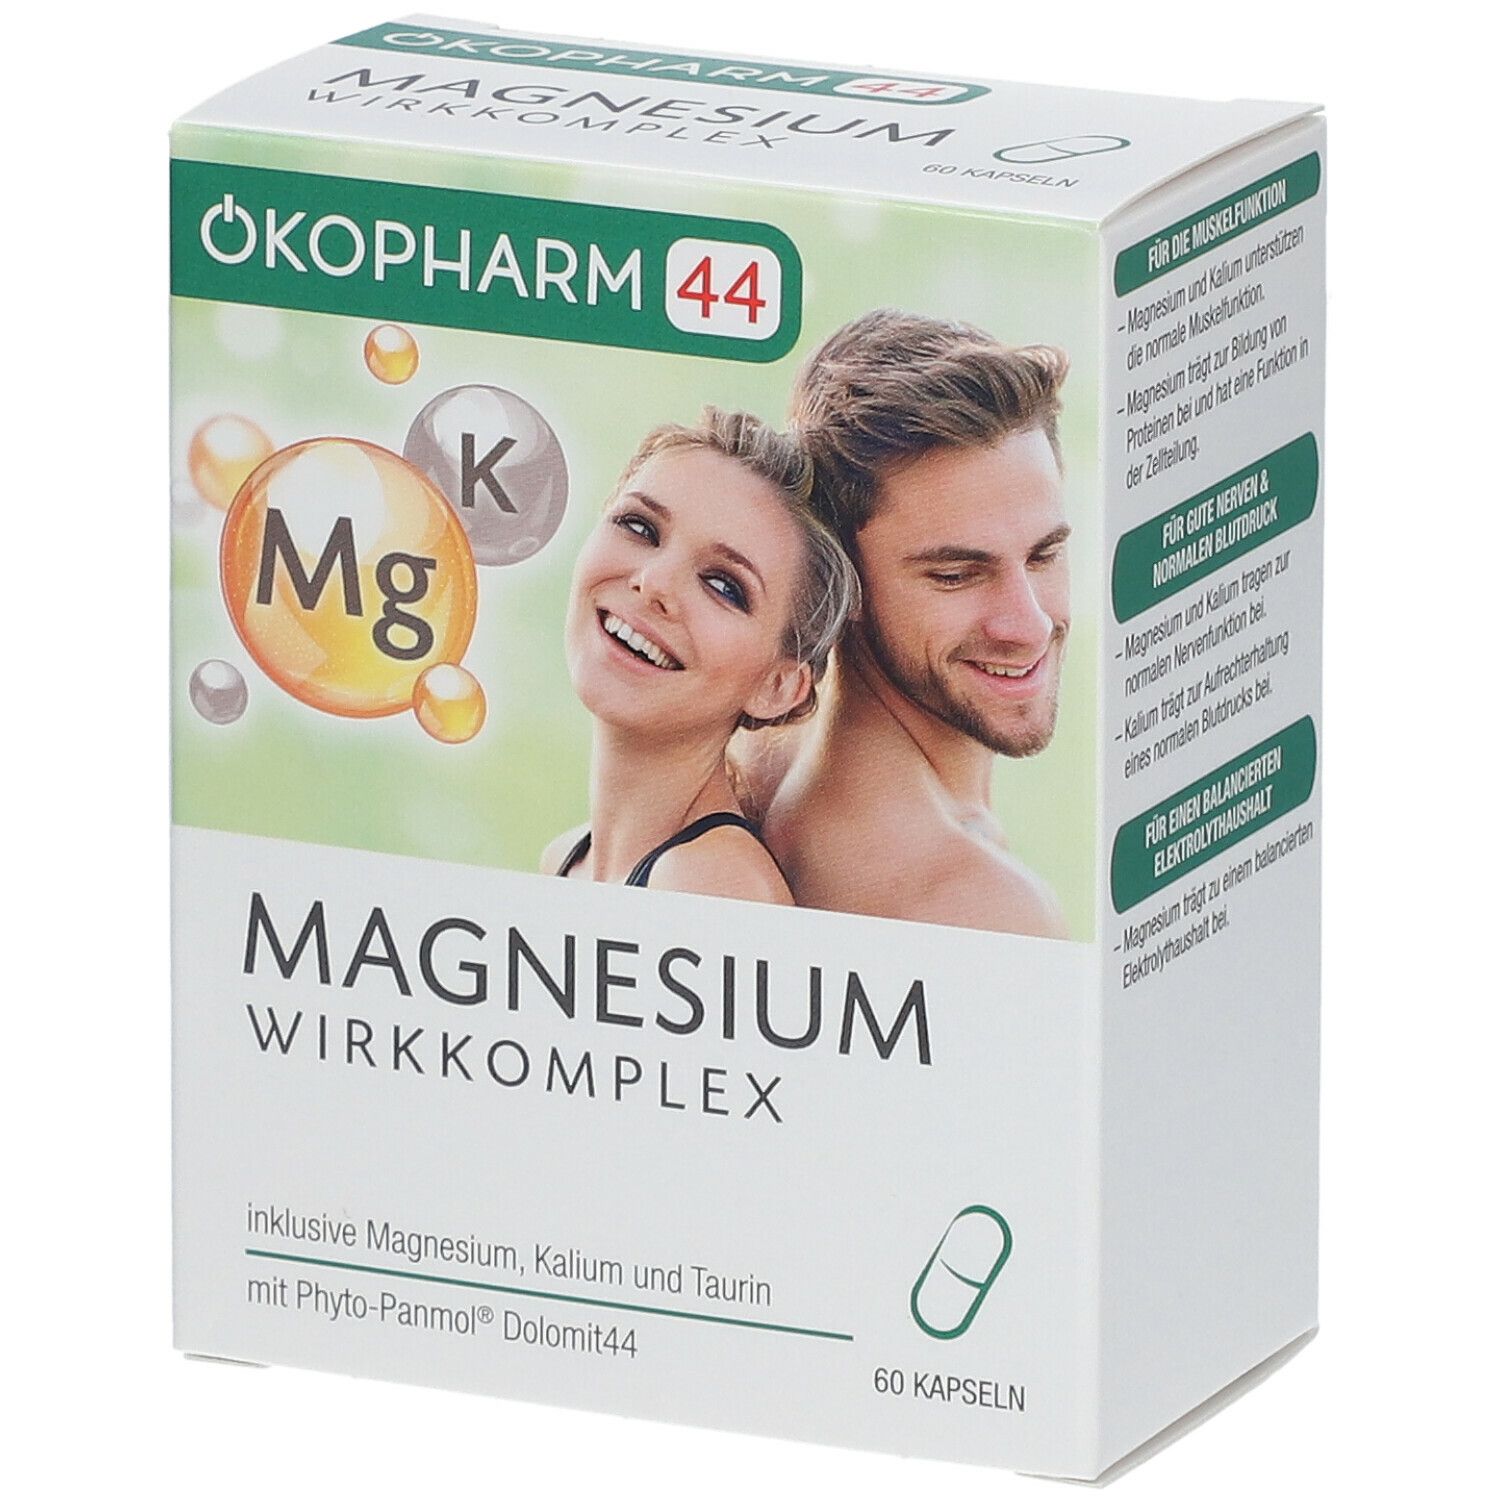 ÖKOPHARM44® MAGNESIUM WIRKKOMPLEX